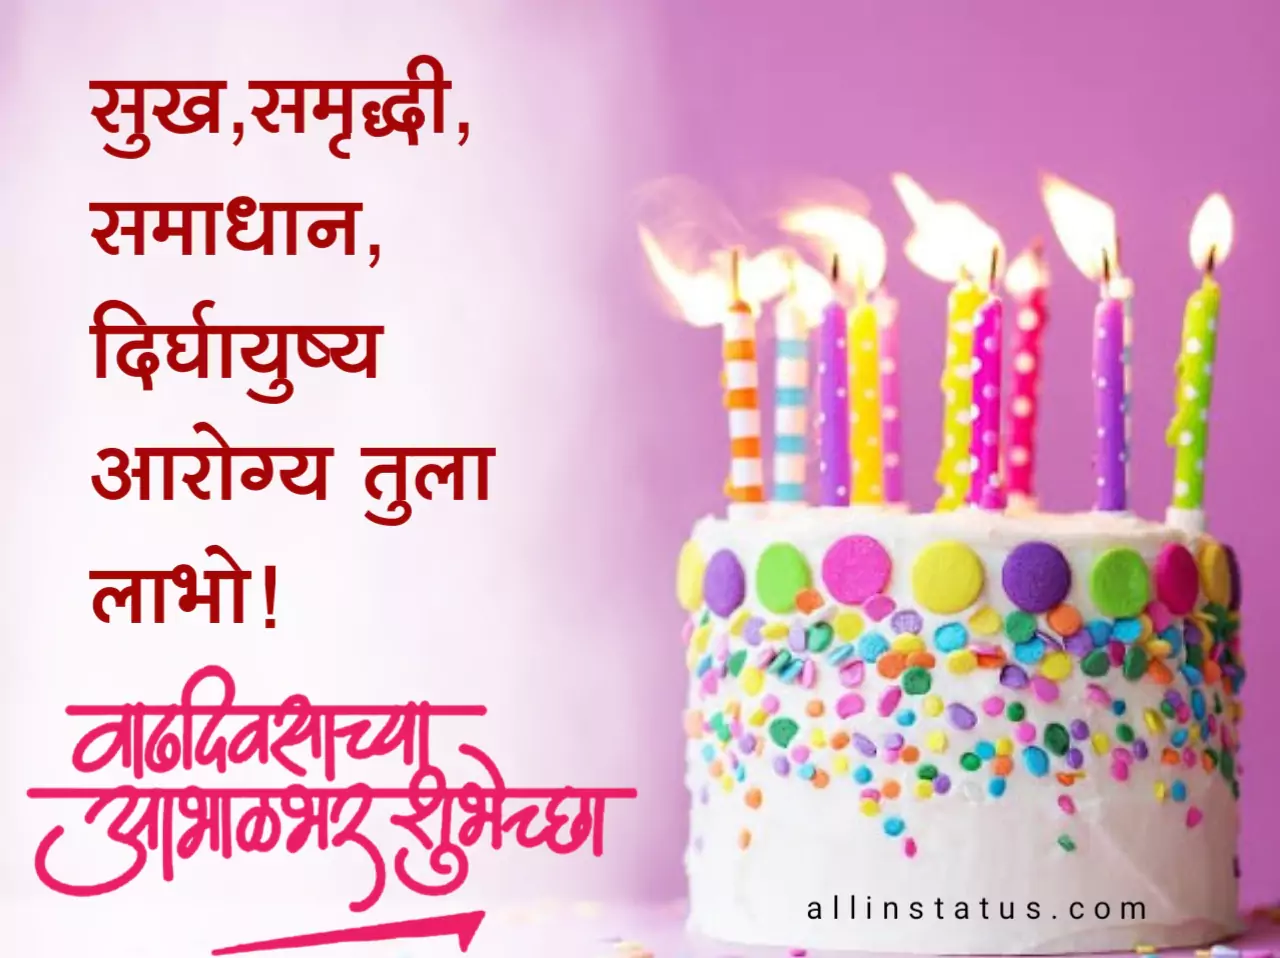 Happy Birthday Status In Marathi